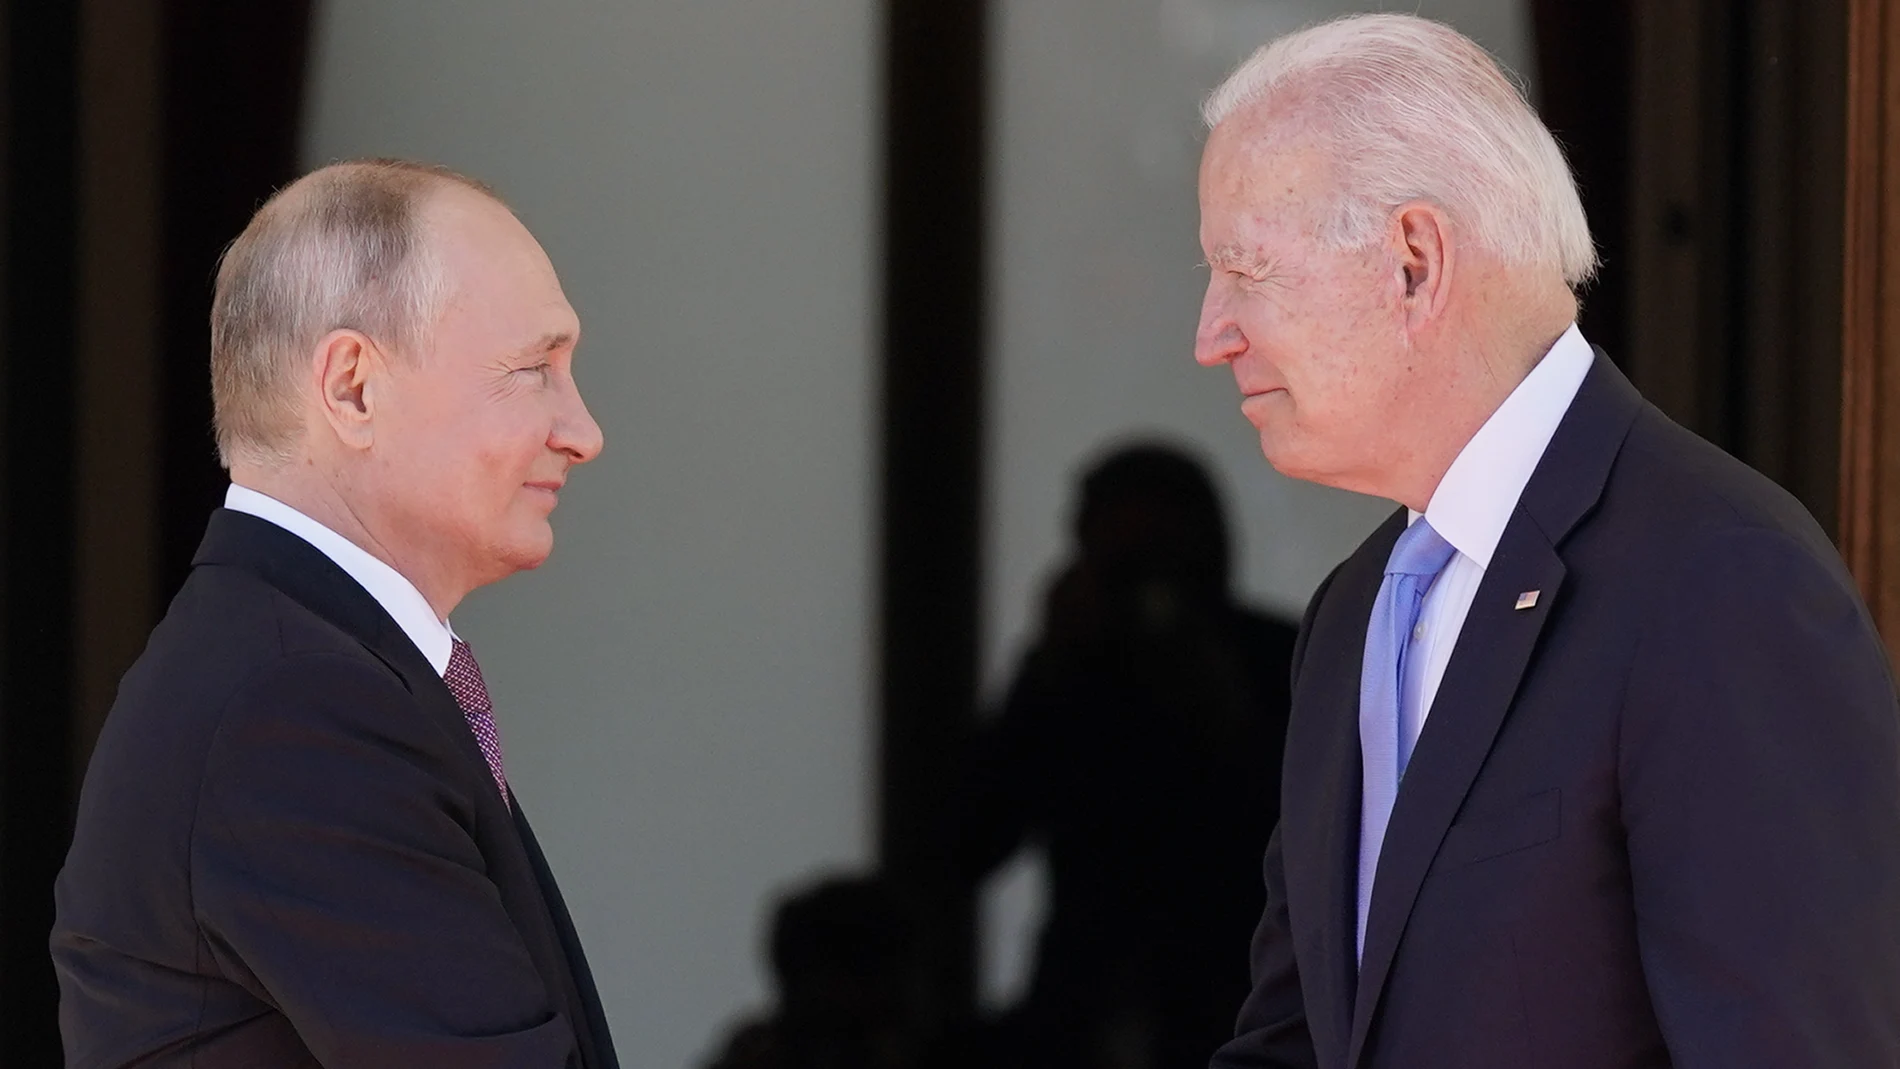 El presidente de EE UU, Joe Biden, y su homólogo ruso, Vladimir Putin, en una imagen de archivo en Ginebra, Suiza.